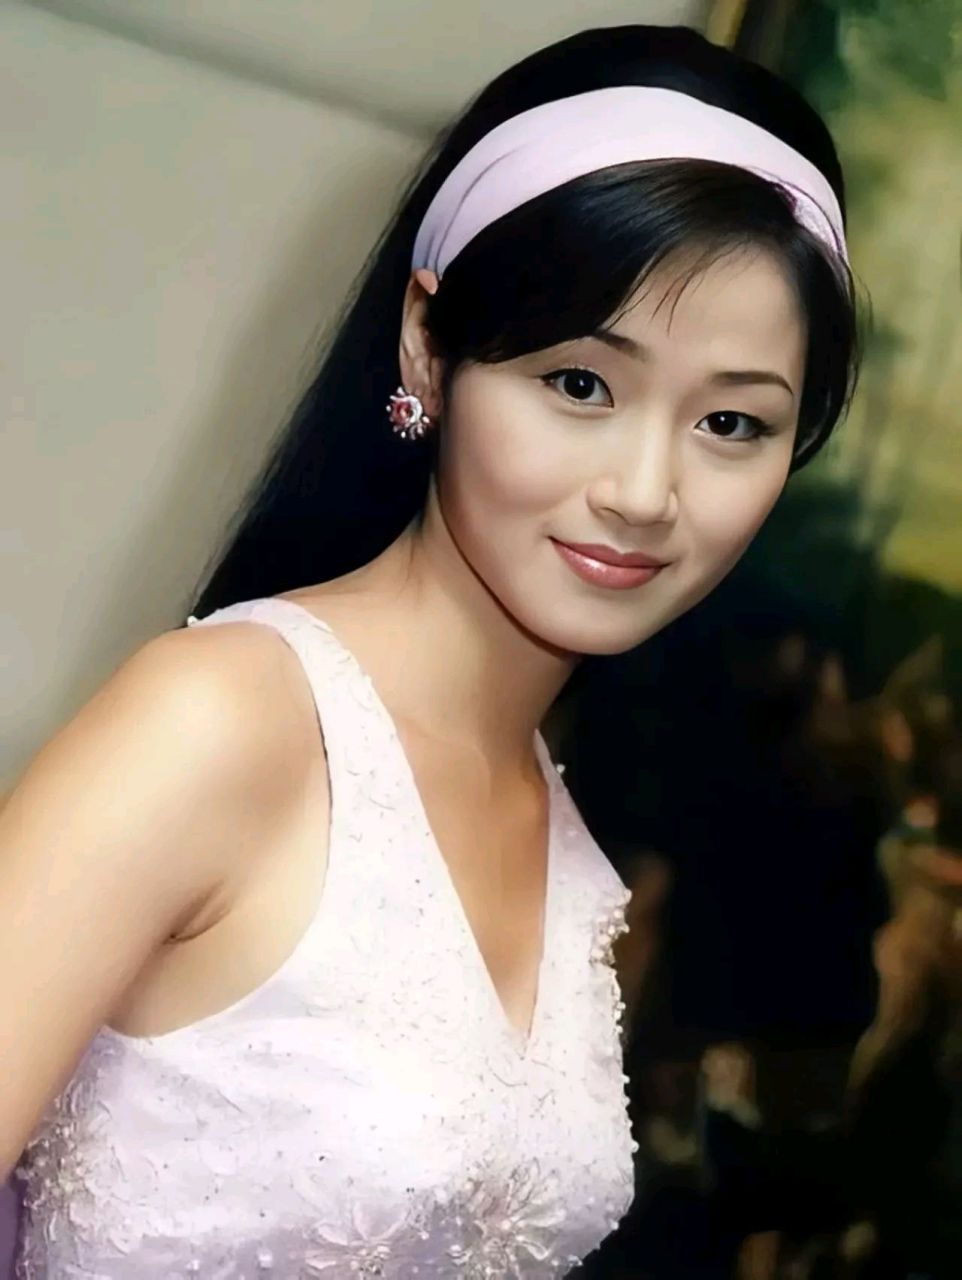 万绮雯,1970年10月2日出生于中国香港,中国香港女演员  1989年,19岁的